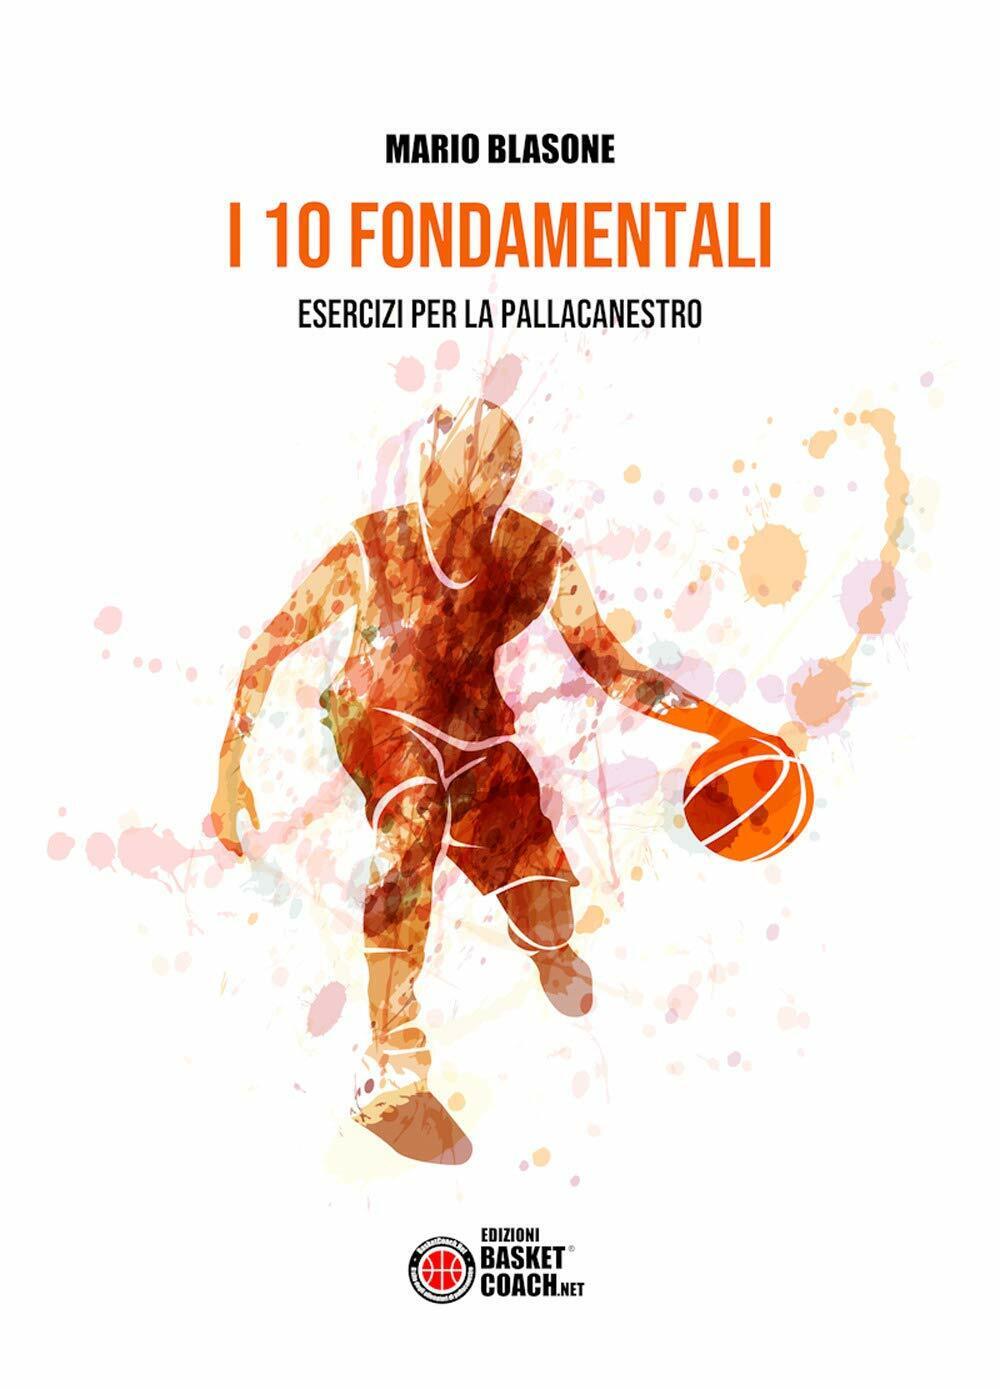 I 10 fondamentali. Esercizi per la pallacanestro - Mario Blasone - 2019